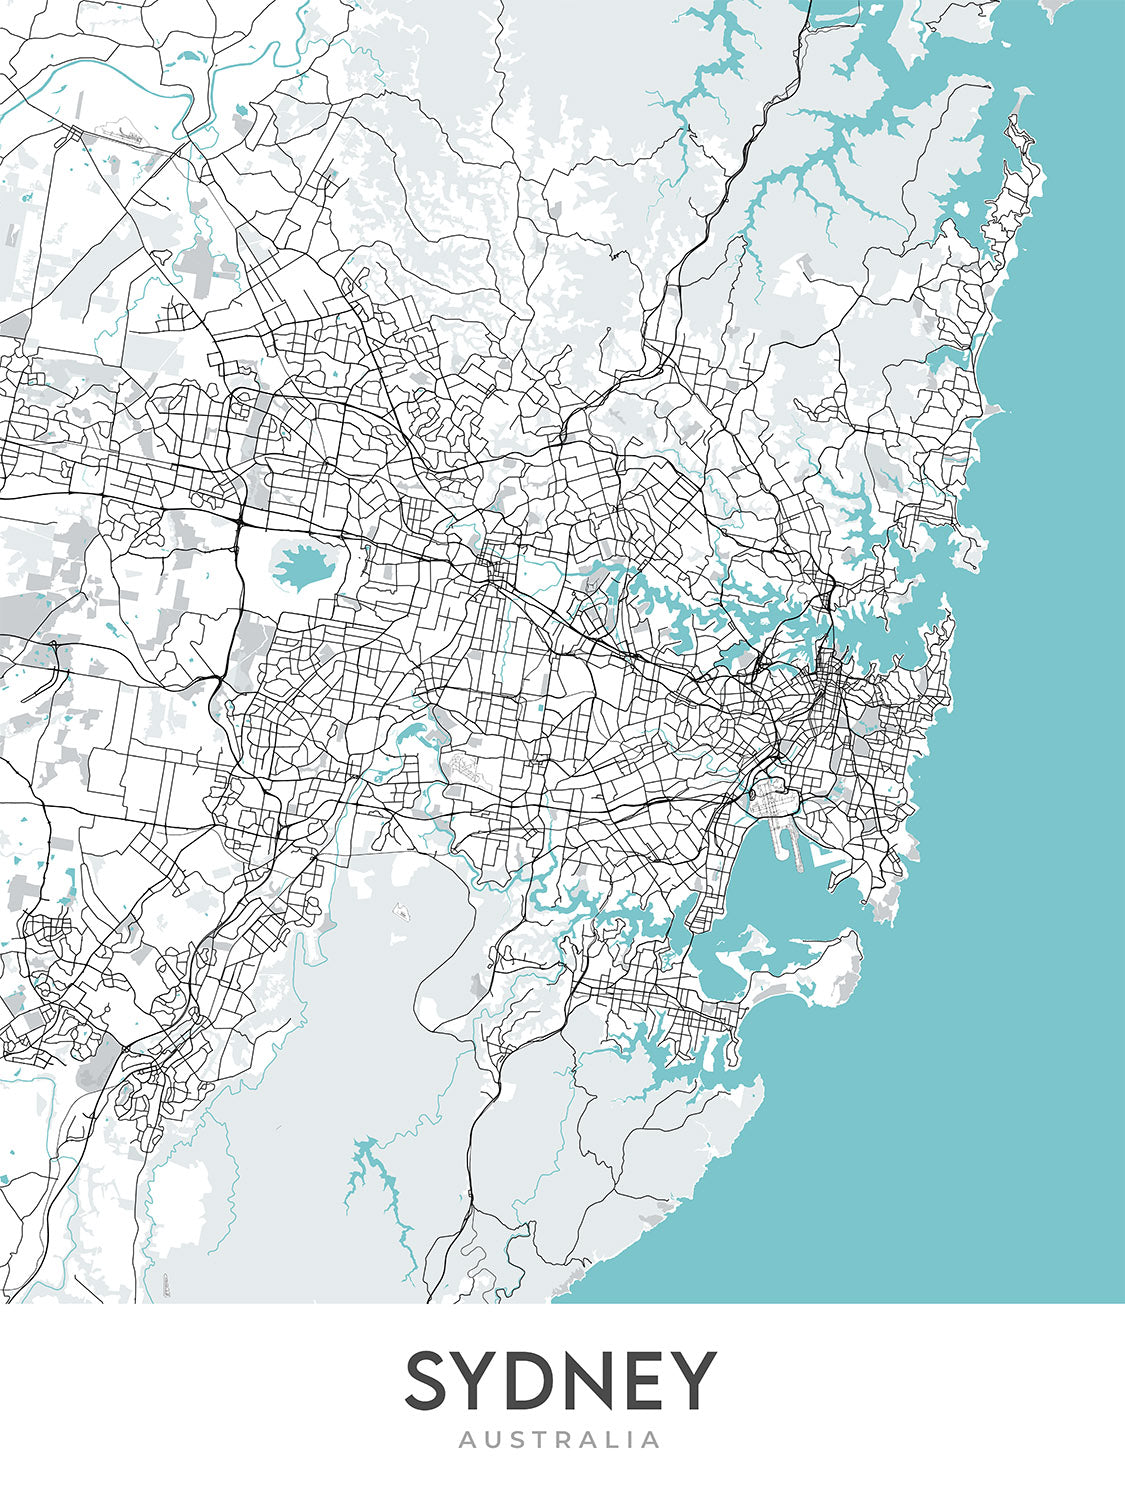 Plan de la ville moderne de Sydney, Australie : CBD, Opéra, Harbour Bridge, Bondi Beach, The Rocks